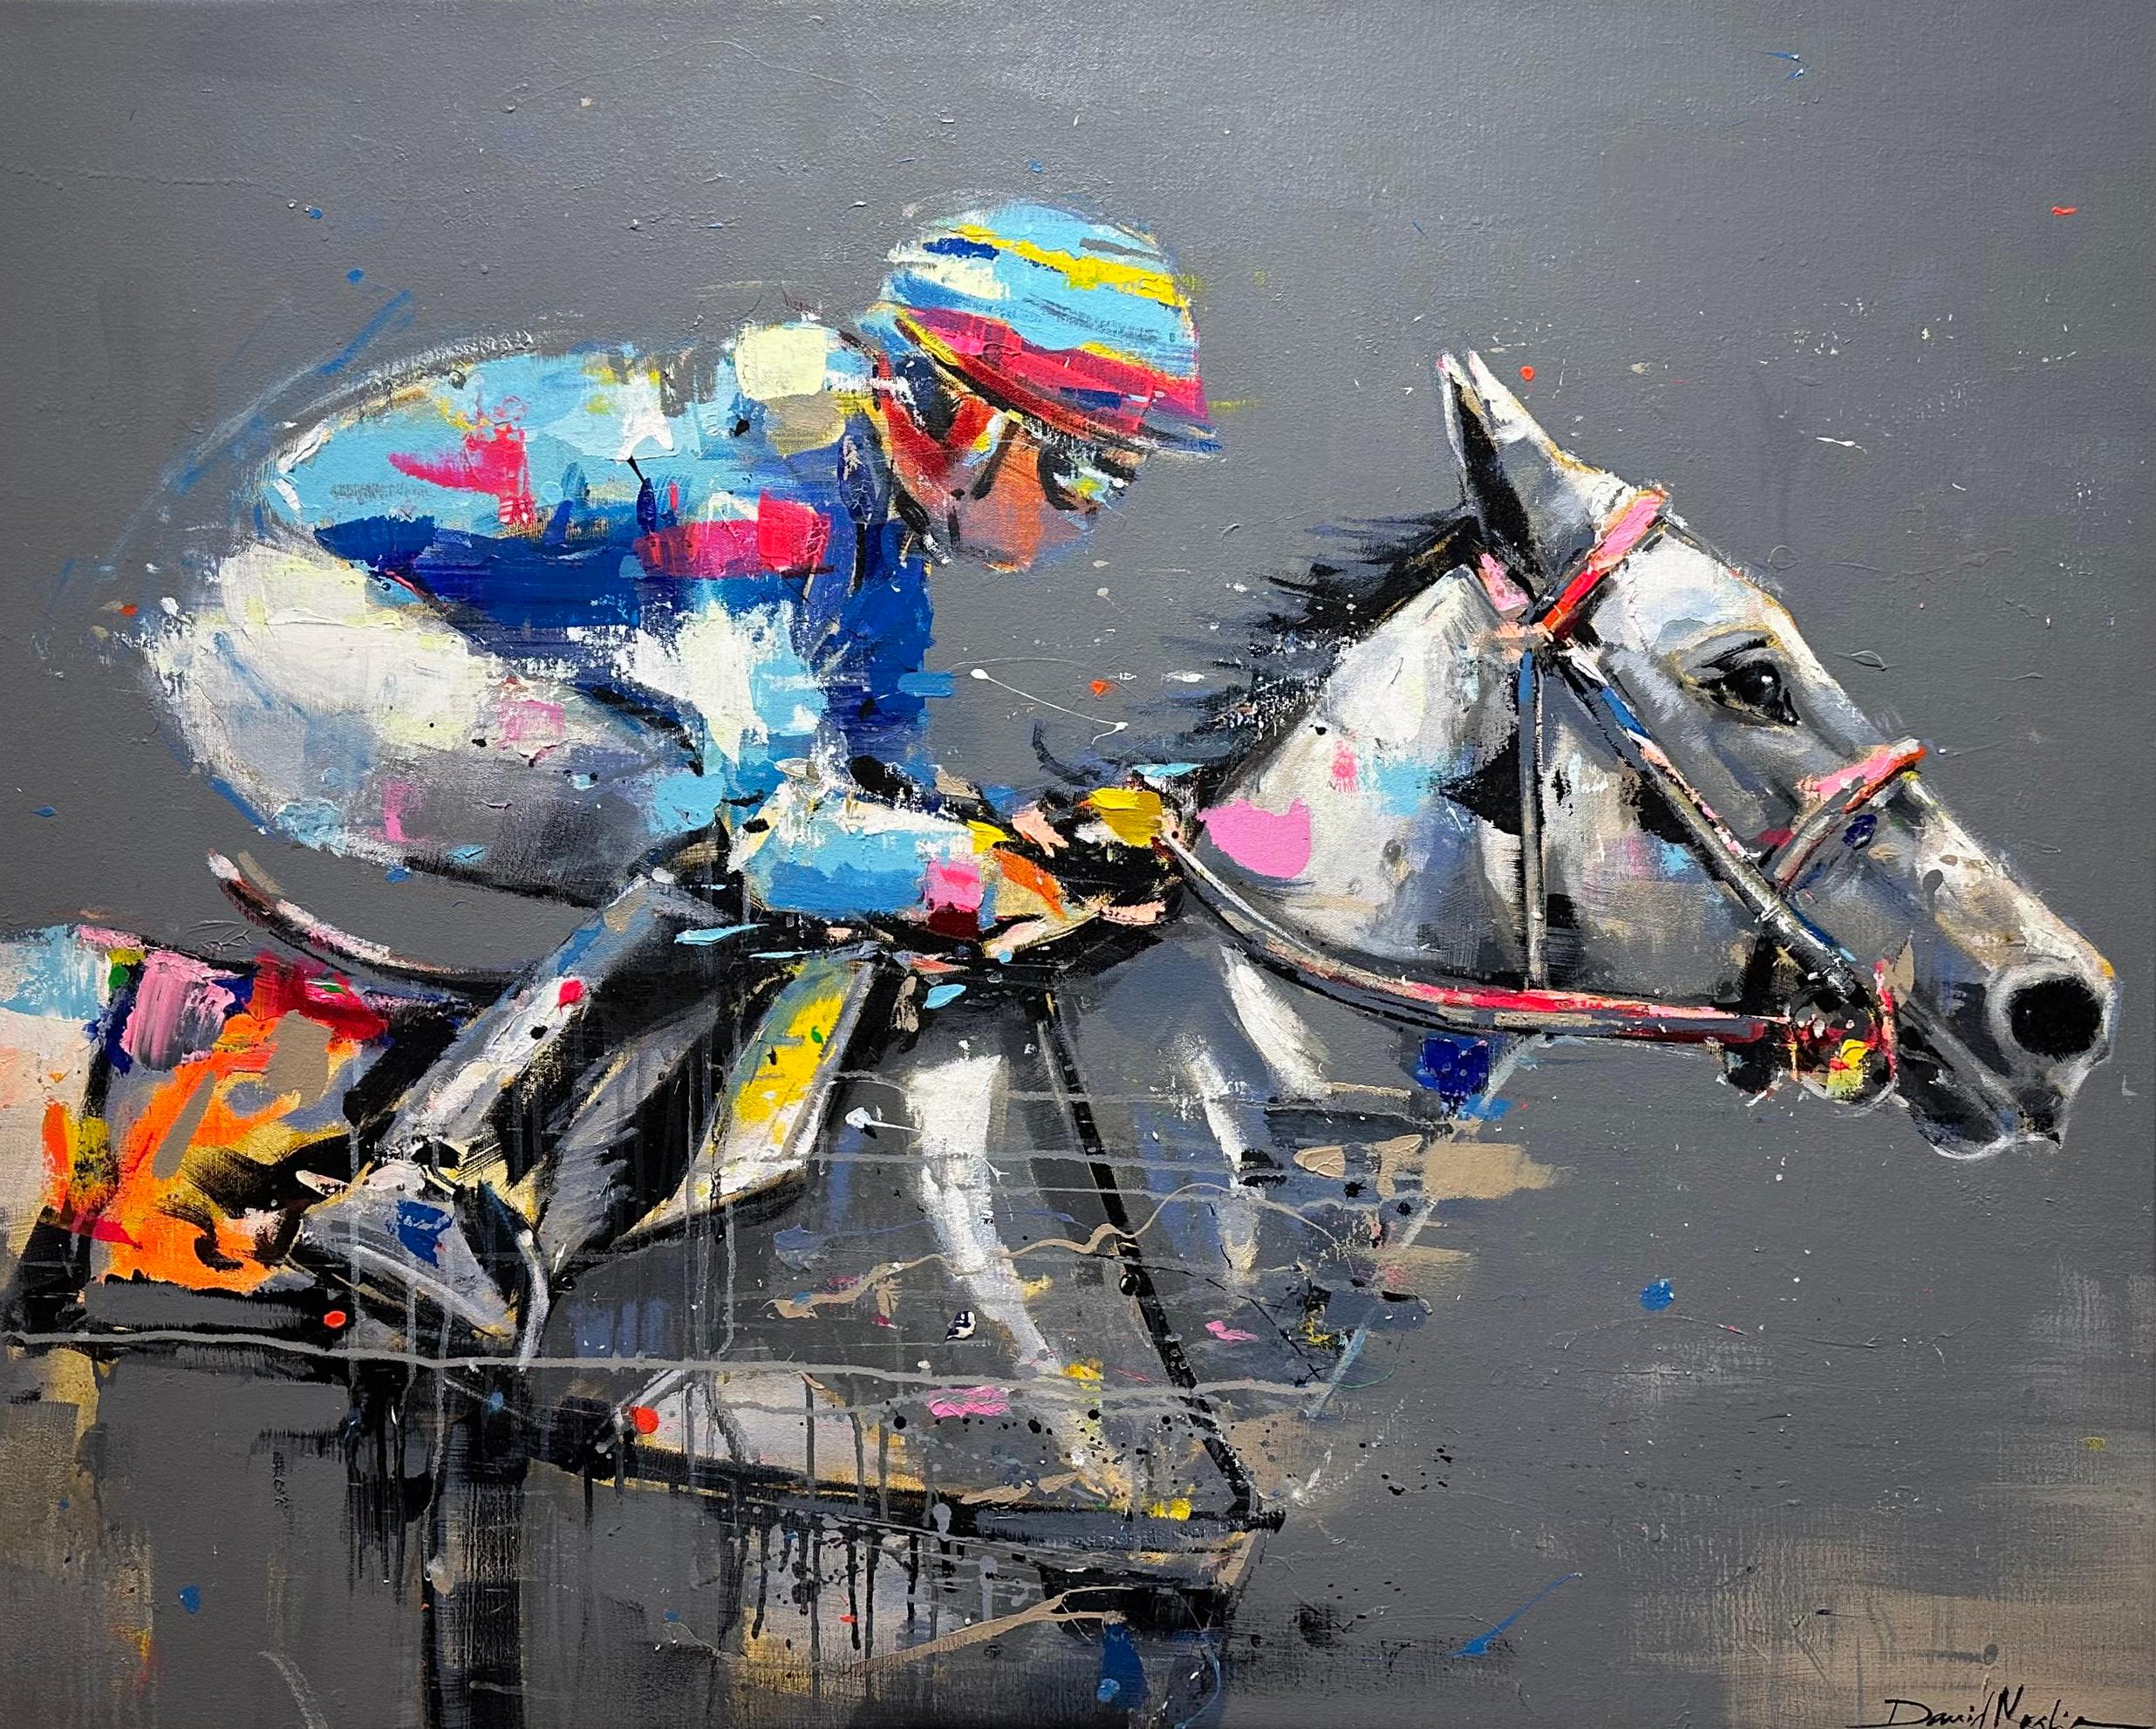 David Noalia, "Rainbow Race", peinture colorée d'équitation de course de chevaux 36x45